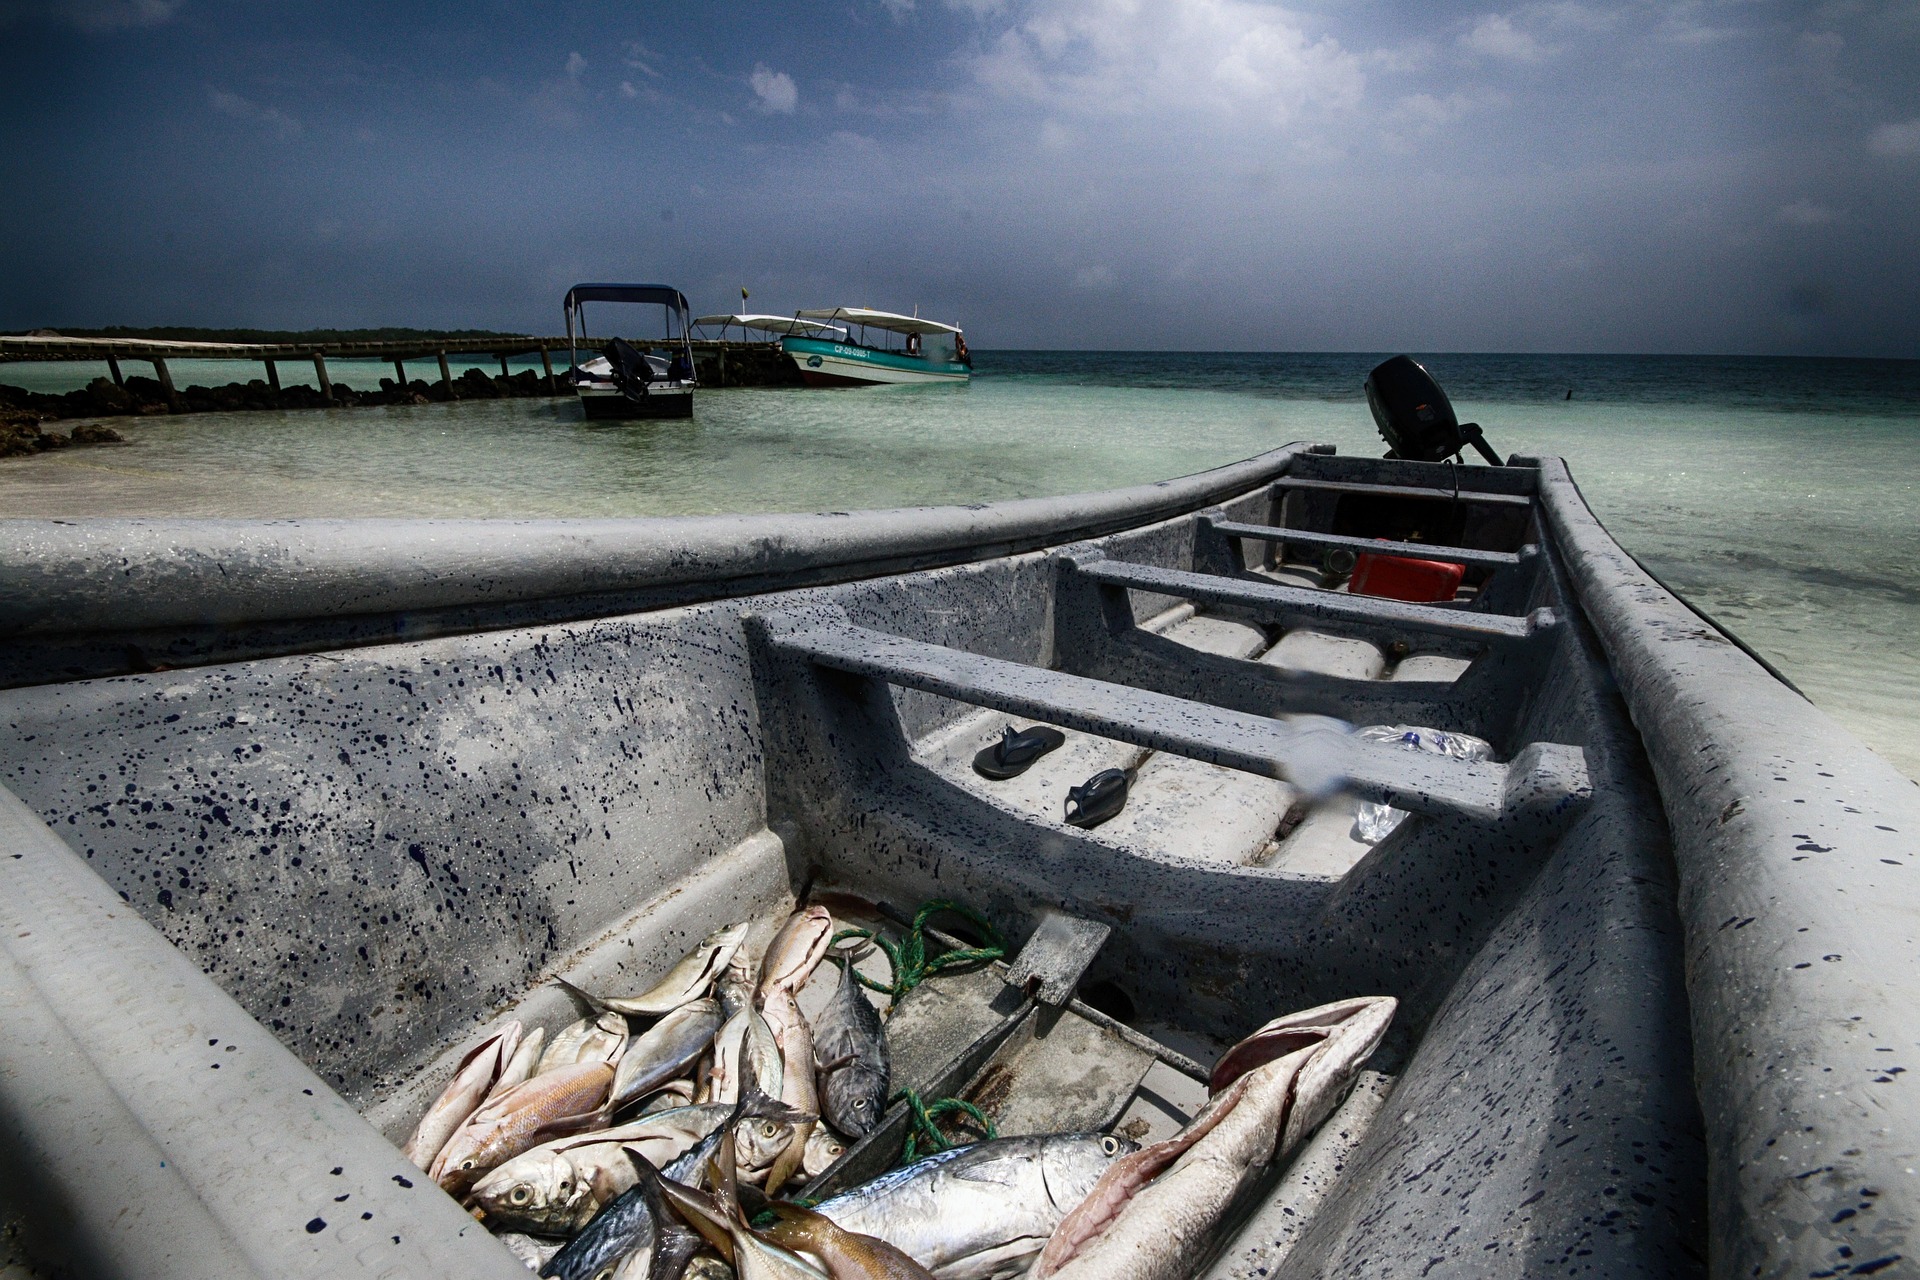 INVIPESCA-FORT incluye una programación plurianual de actividades para identificar y establecer las prioridades científico-pesqueras en la región a través de la capacitación de técnicos e investigadores en evaluación de pesquerías artesanales. Foto: Mathieu Vivier / Pixabay